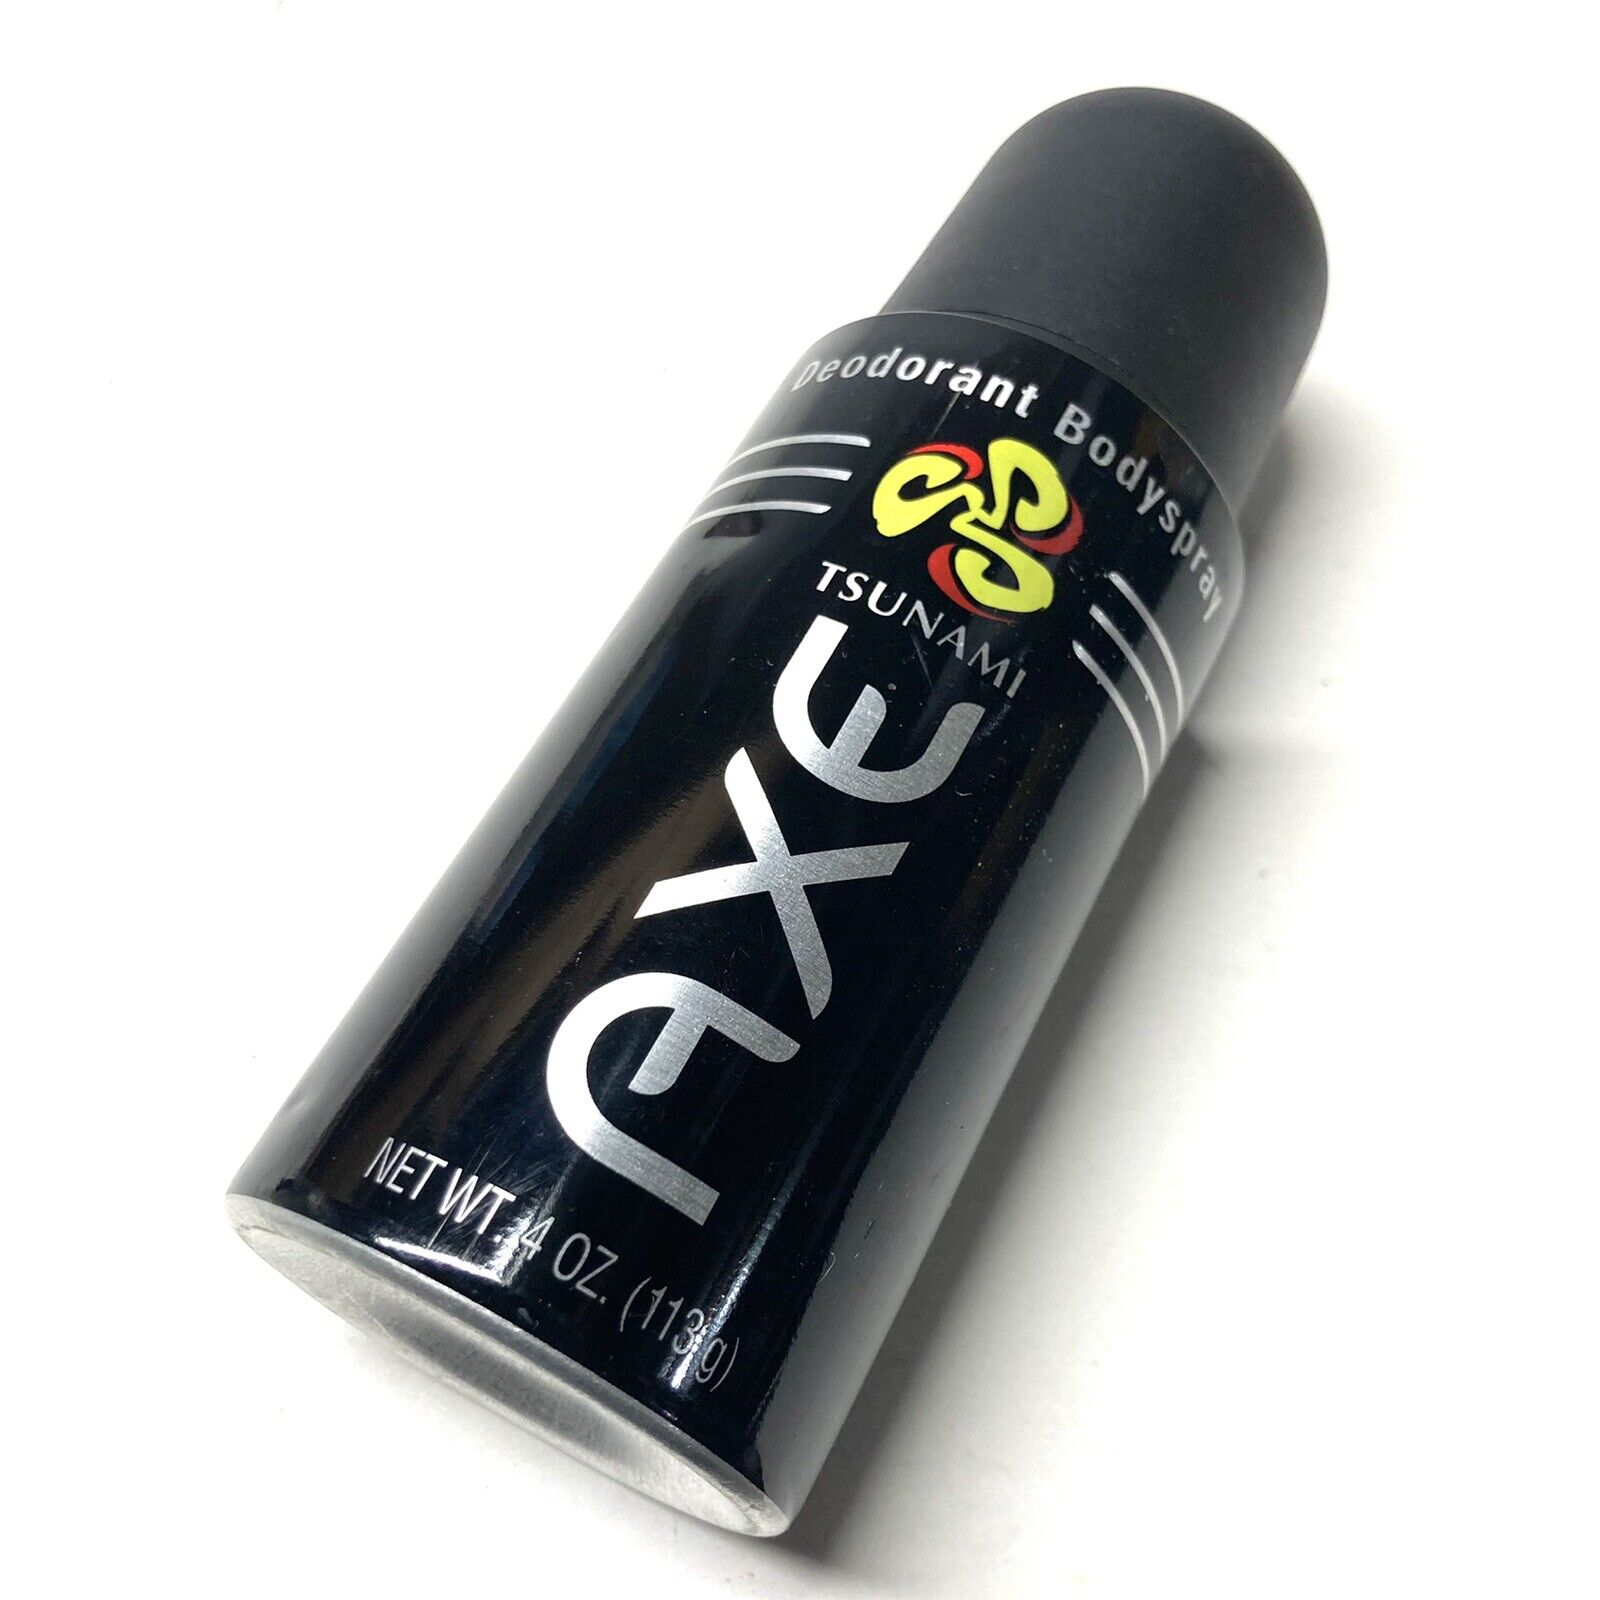 RARE Discontinued AXE Deodorant Tsunami Body spray Scent - 20% Full